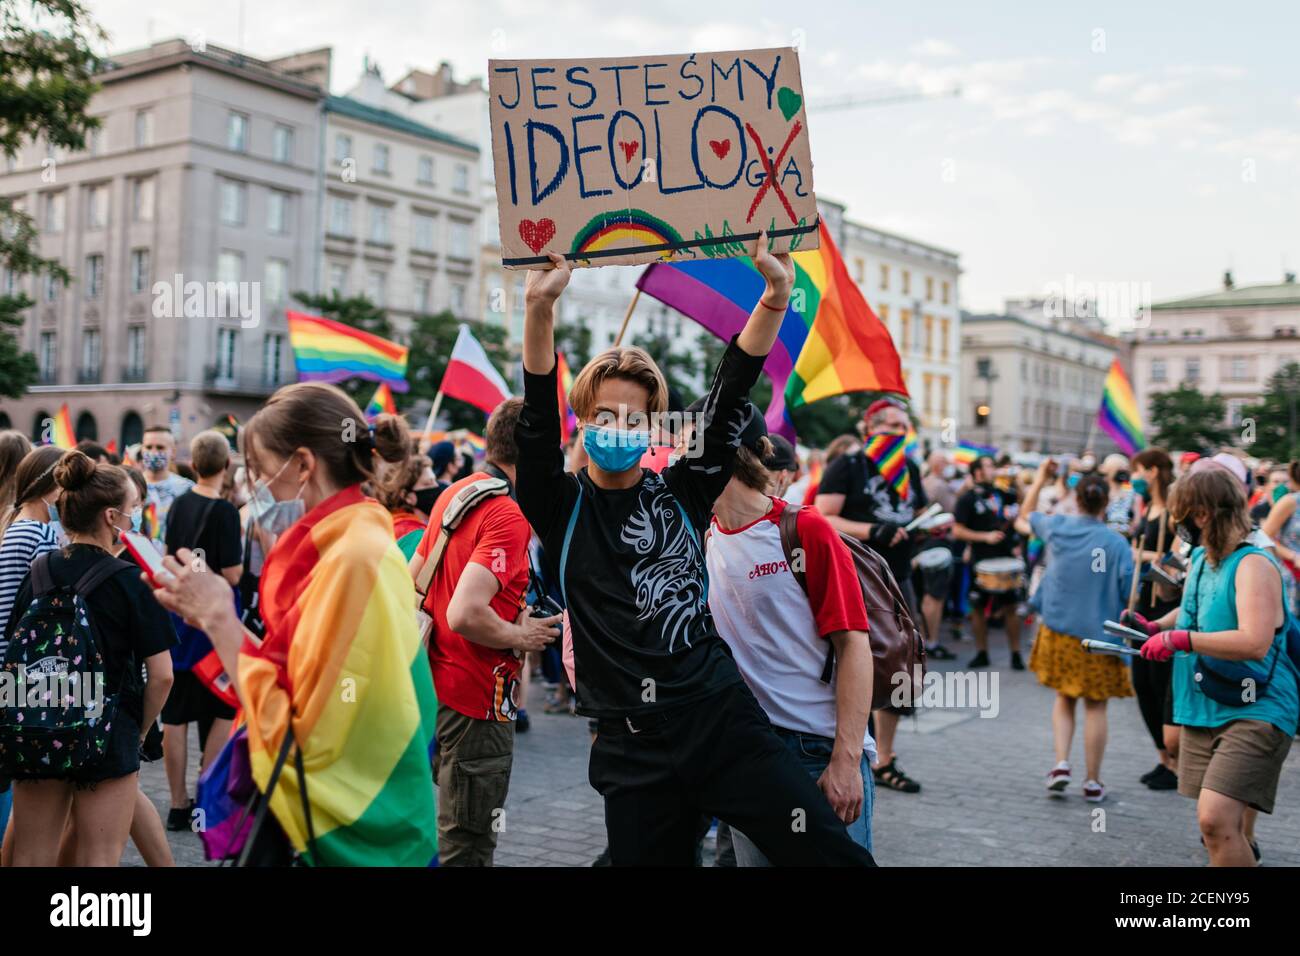 Un partecipante ha un cartello che dice che siamo ideali, non siamo un'ideologia 'visto durante il marzo.la marcia annuale di uguaglianza anche conosciuta come Pride Parade ha attratto un numero particolarmente grande di partecipanti, così come due contromunce. In Polonia, recentemente si è svolto un acceso dibattito pubblico tra sostenitori della tolleranza, con una visione di centro o di sinistra, e circoli conservatori, nazionalisti e cattolici di destra, che stanno esprimendo la loro avversione alla comunità LGBT in modo sempre più spietato. Gli oppositori della comunità LGBT lo accusano di cercare di realizzare una rivolta morale Foto Stock